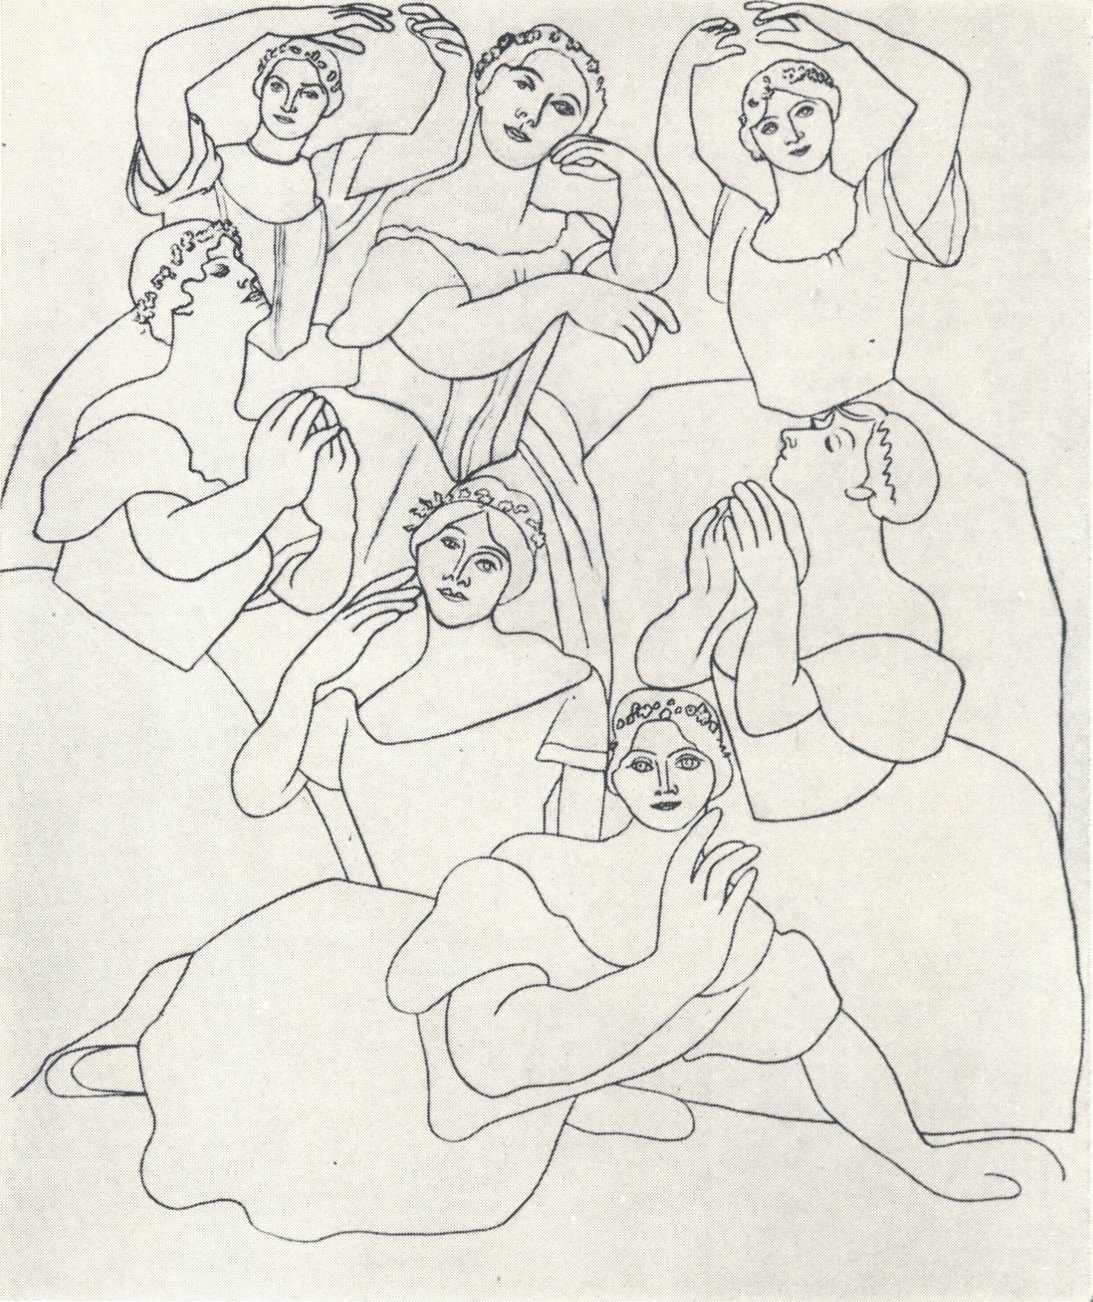 32. Пабло Пикассо. Семь танцовщиц. 1919